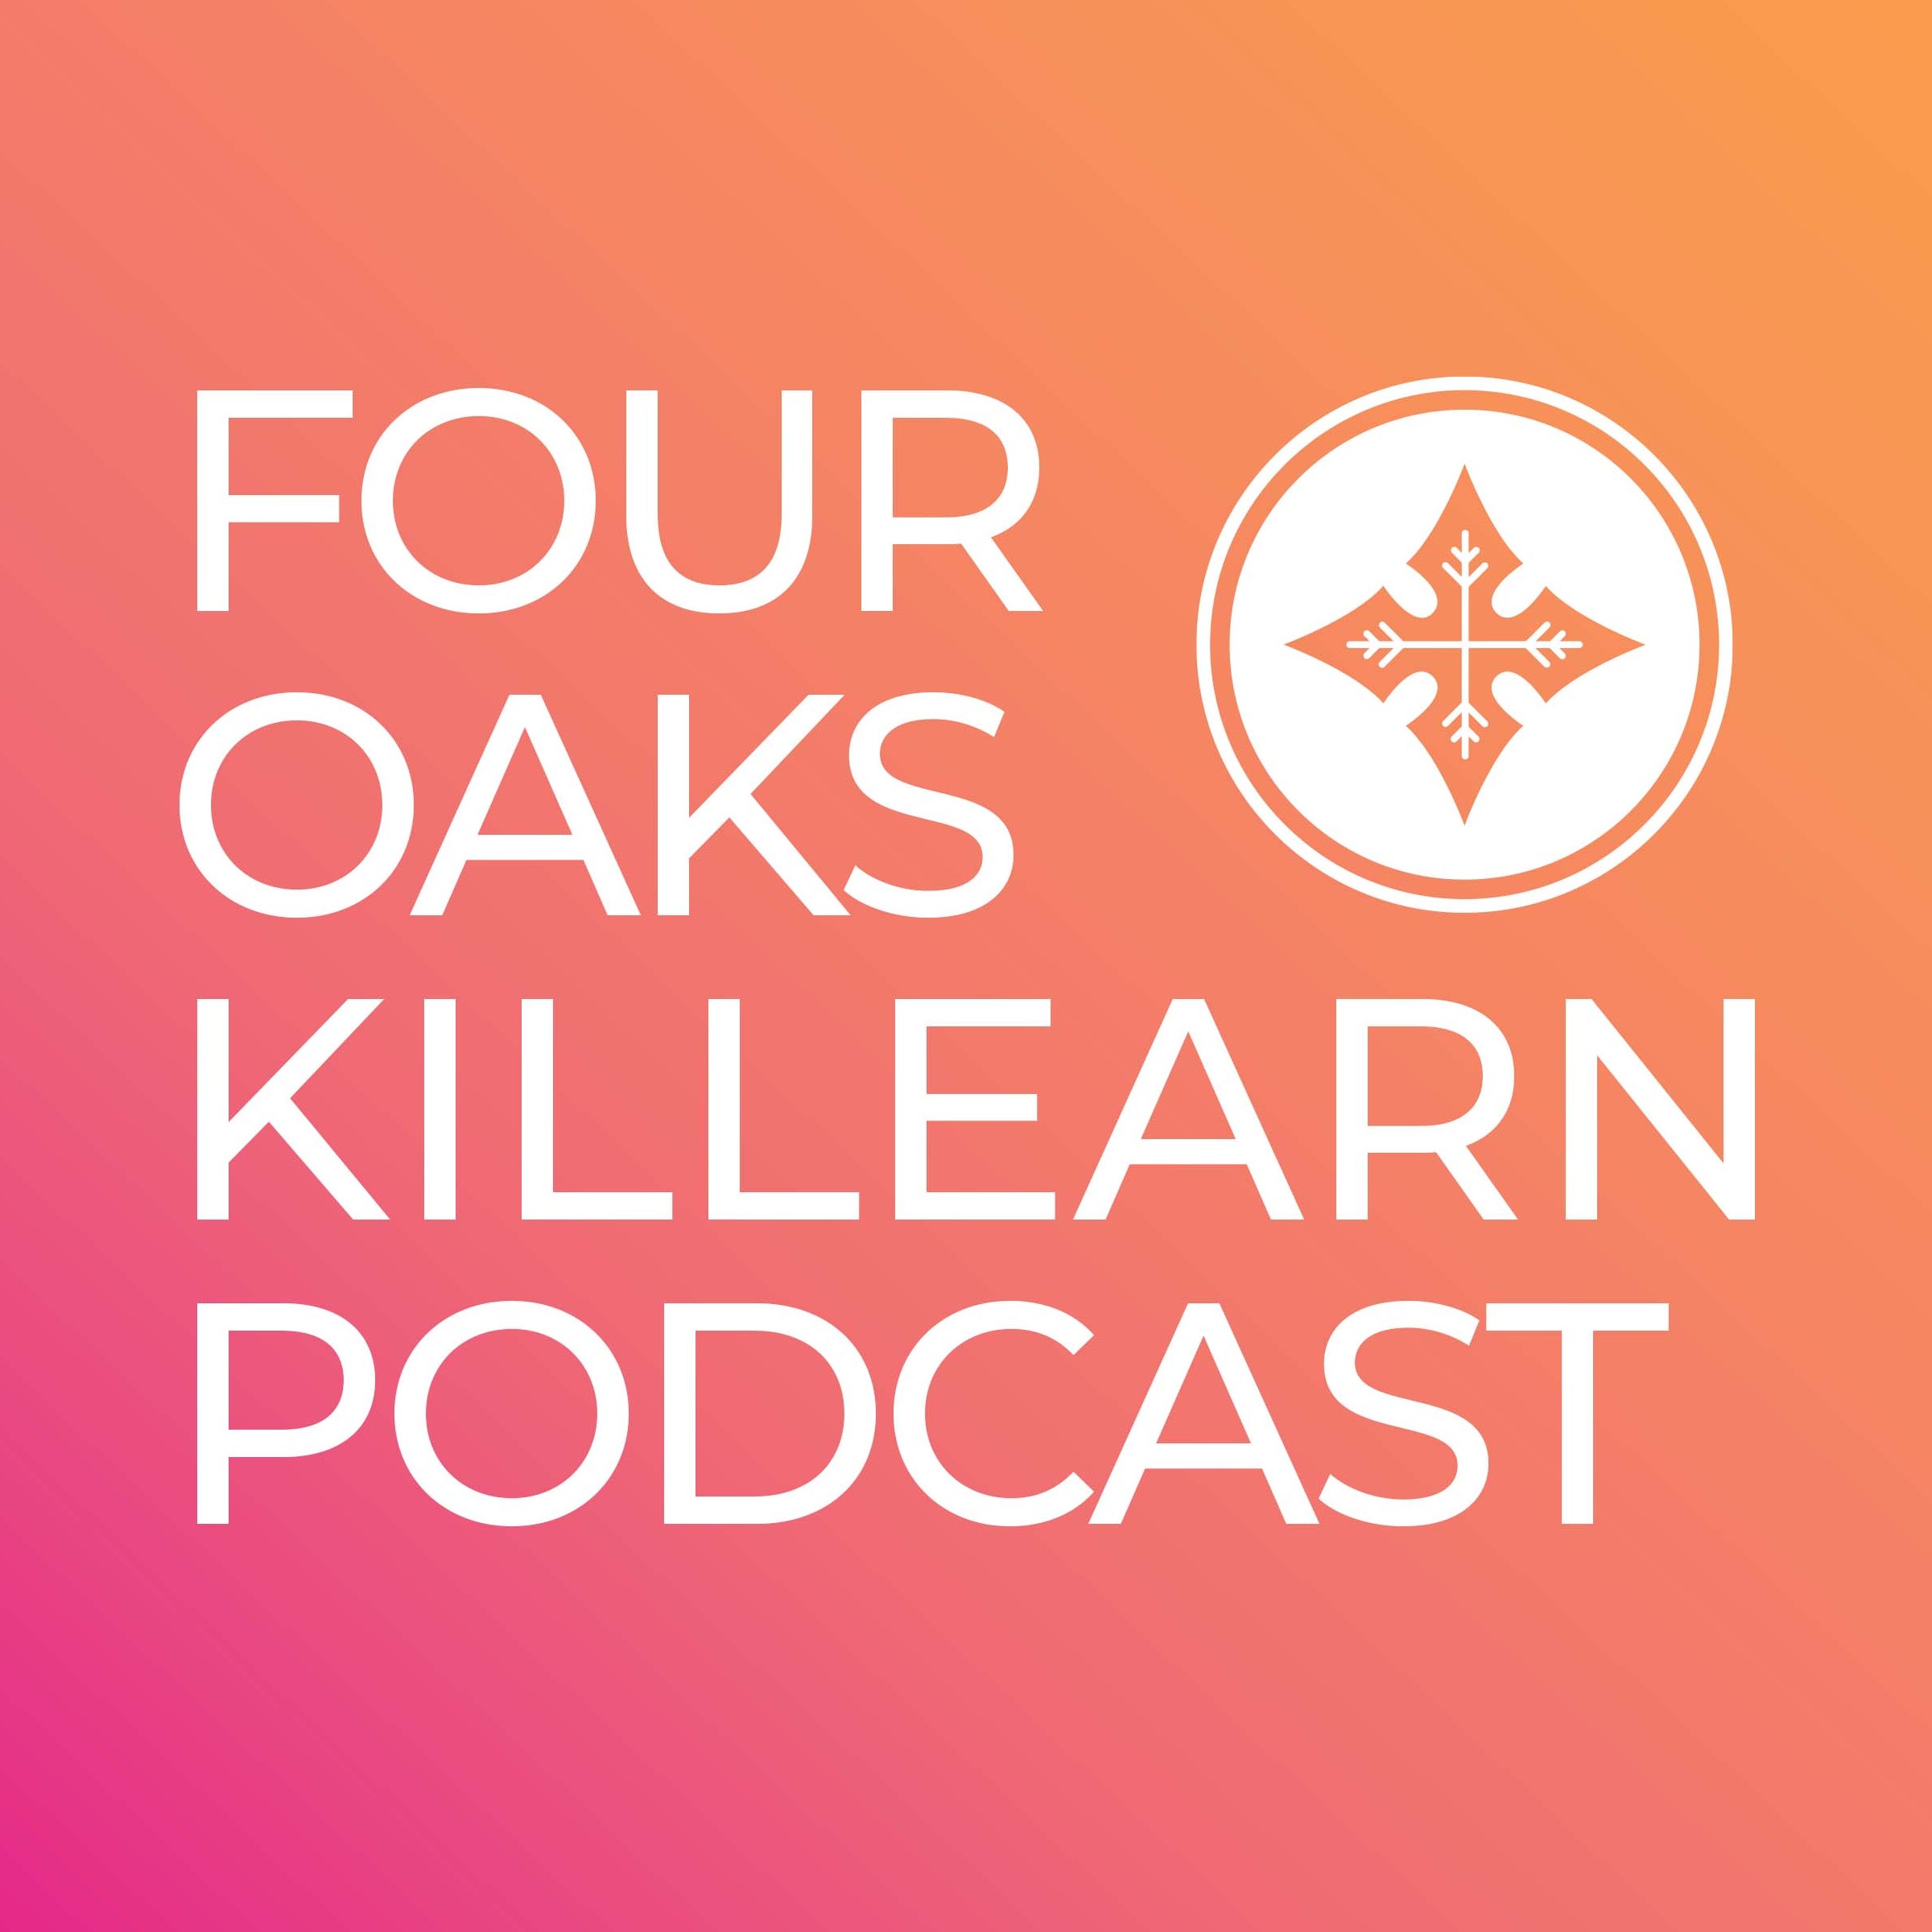 Four Oaks Killearn Podcast